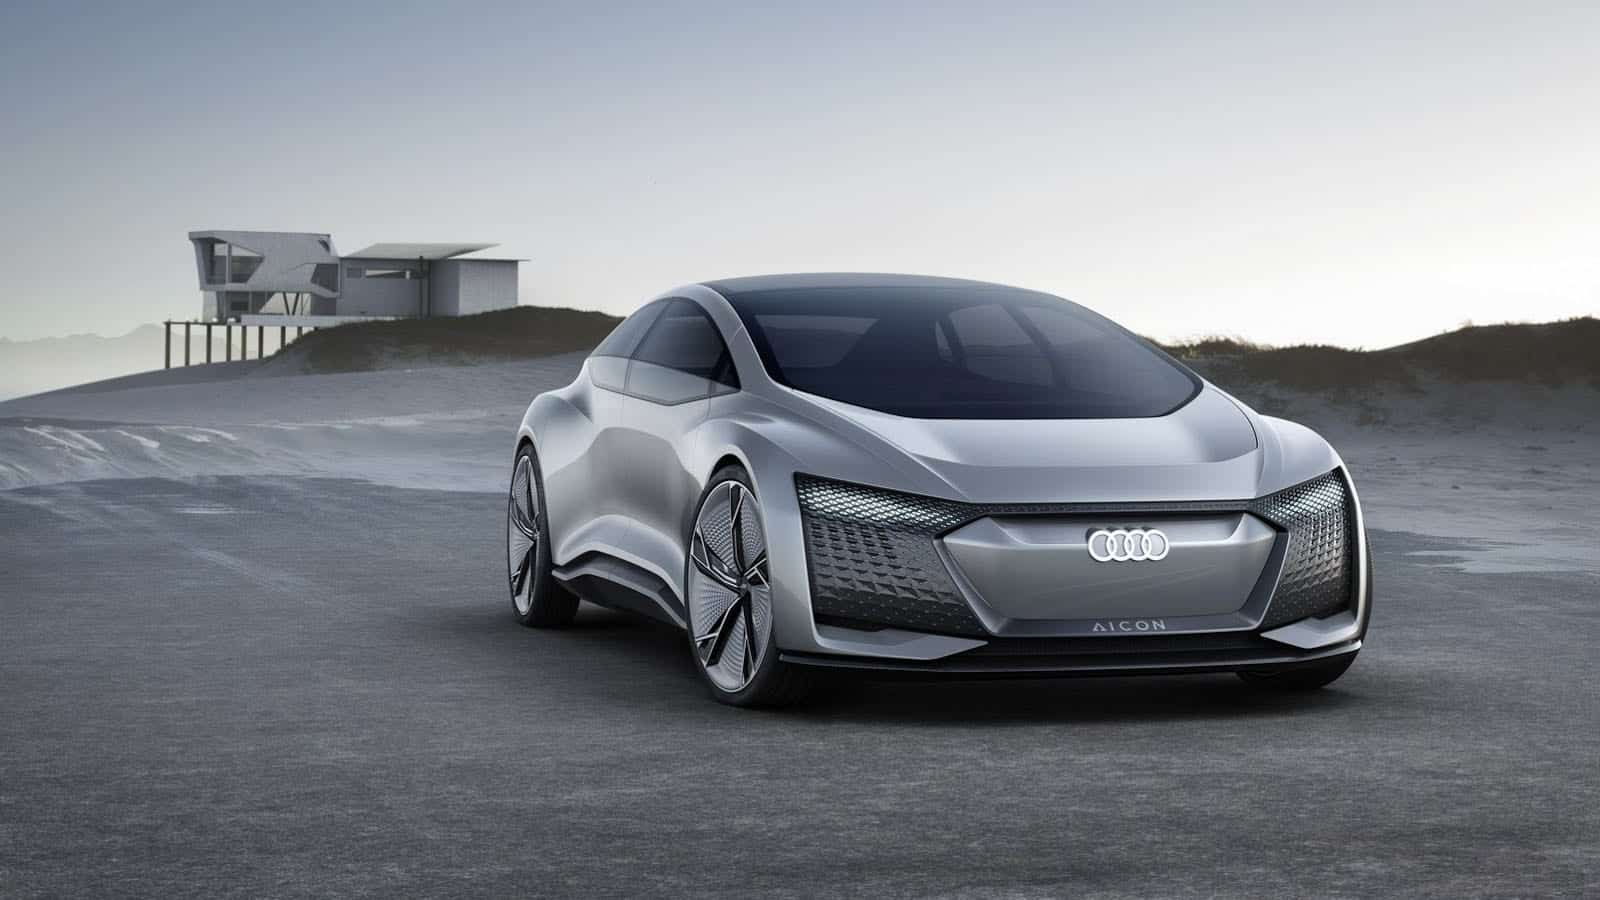 Le concept Aicon annonce un futur autonome chez Audi